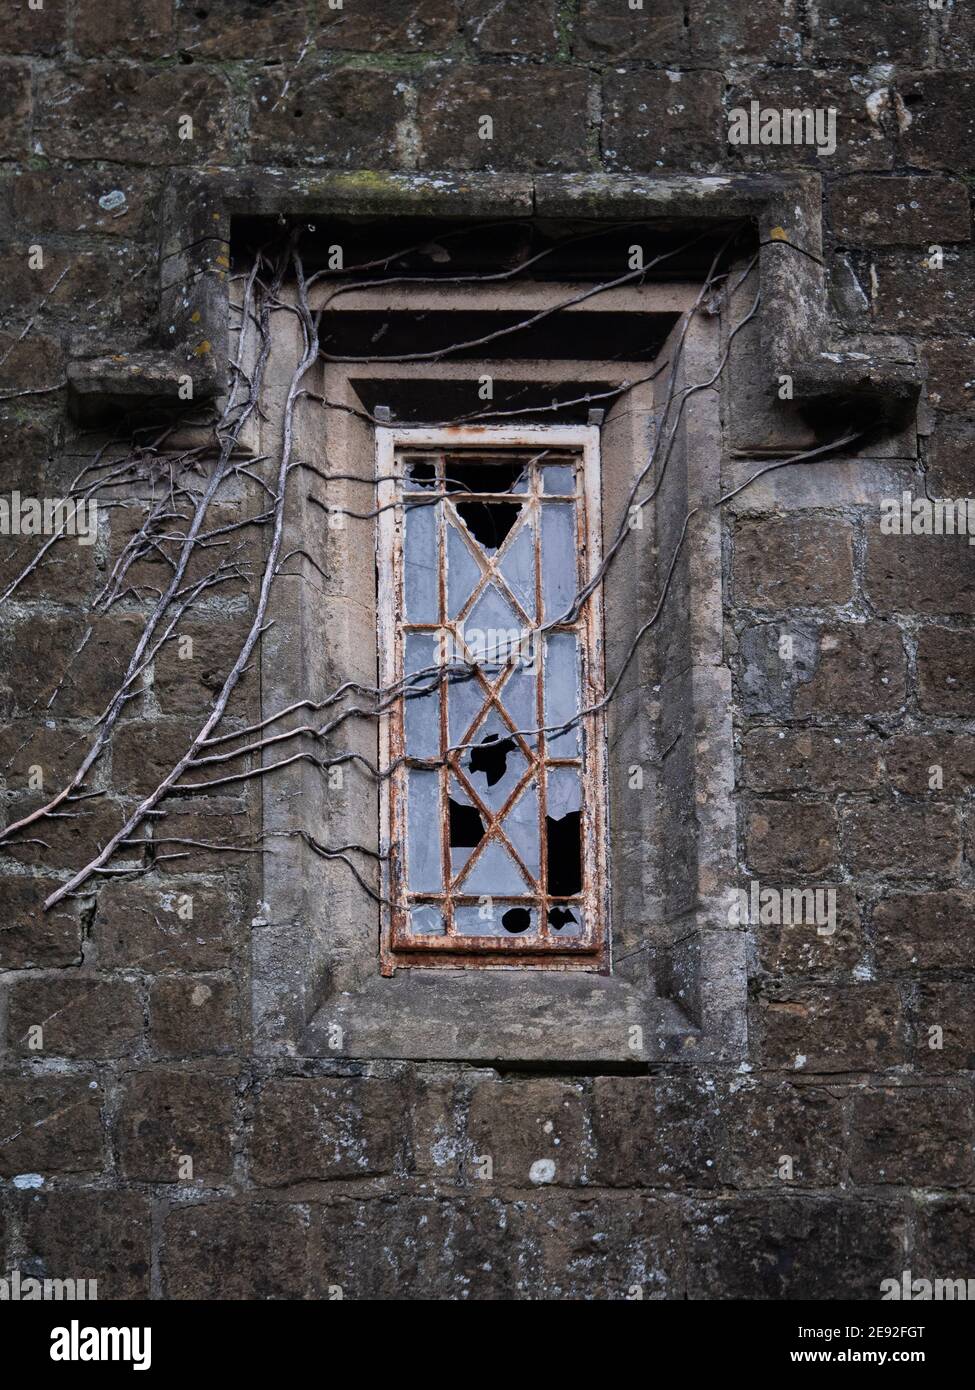 Un'immagine scura e moody di finestre rotte in una vecchia finestra in metallo con radici di edera e rami che si diffondono attraverso. Foto Stock